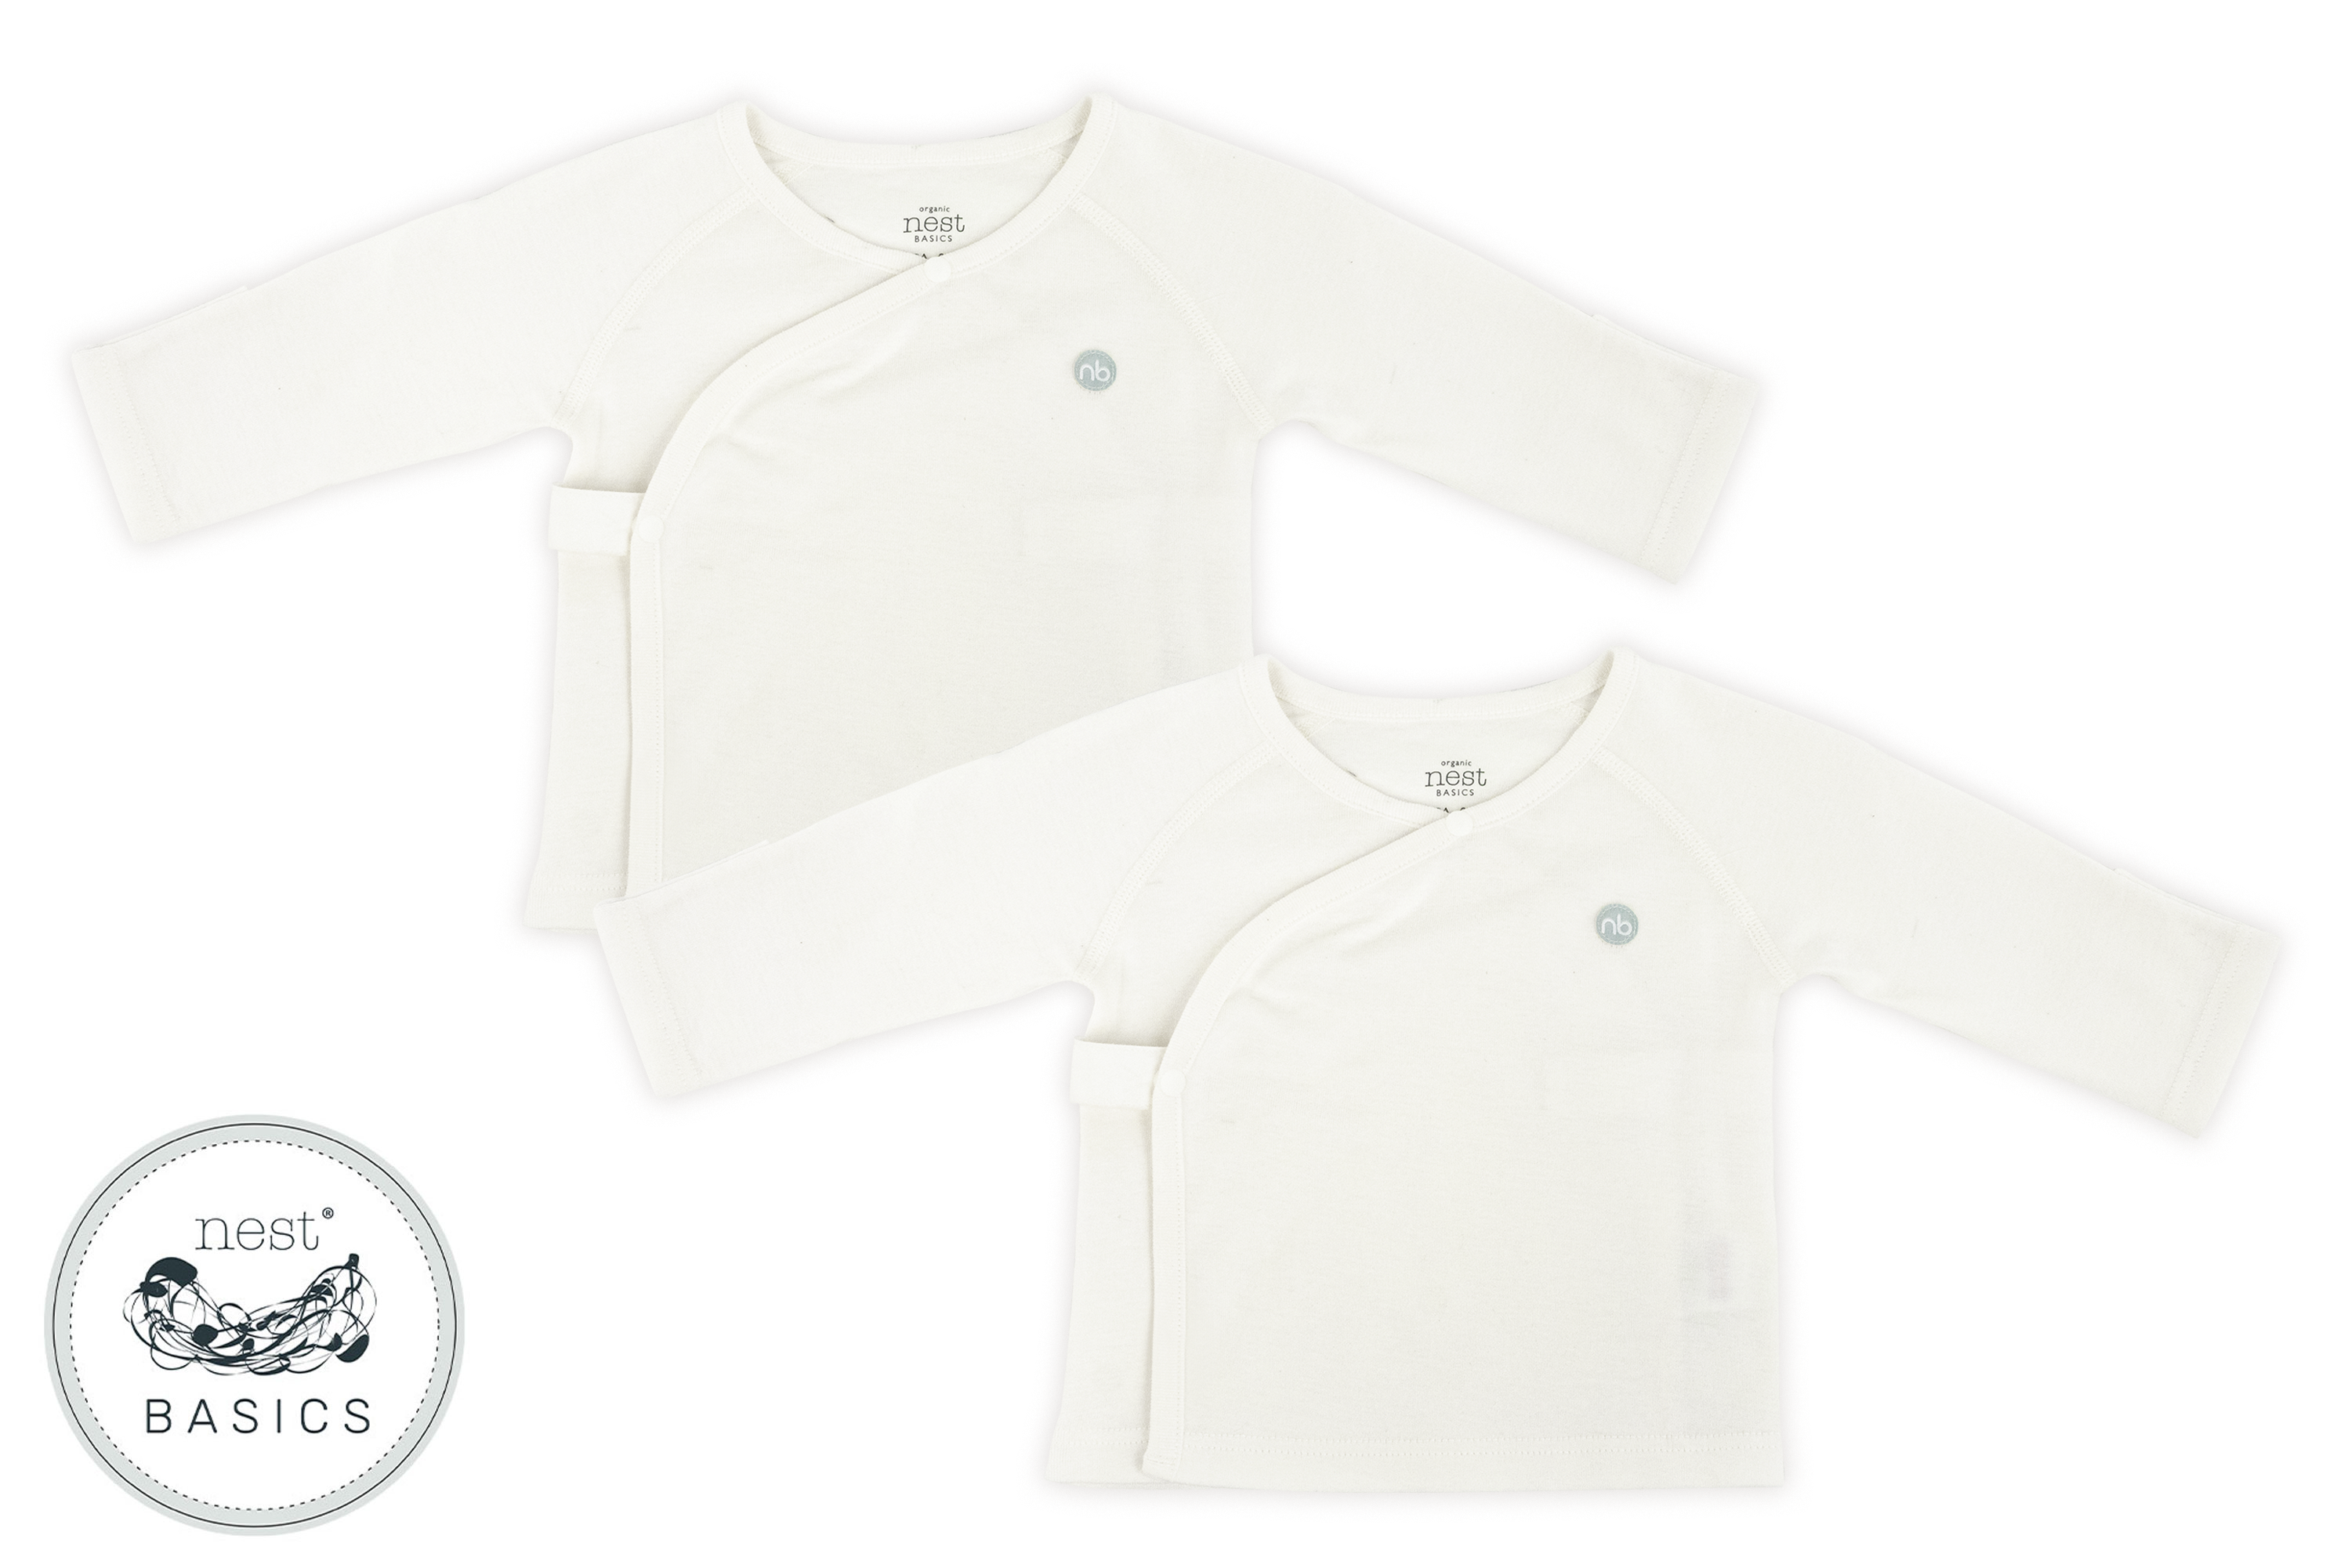 Toddler & Kids Long Sleeve Shirt – White – Premium 100% Cotton